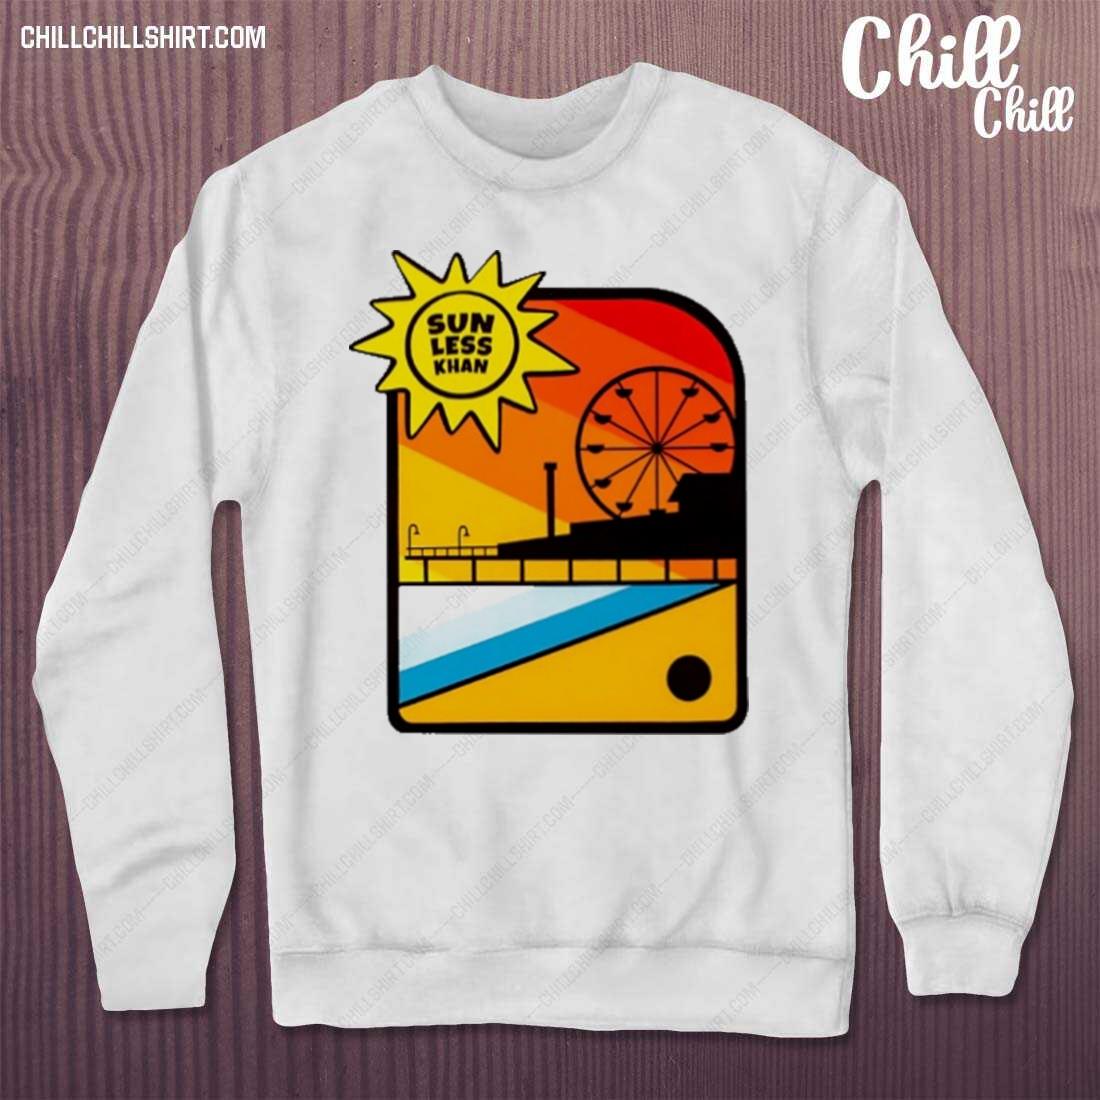 Nice sunless Khan Cream Shirt sweater